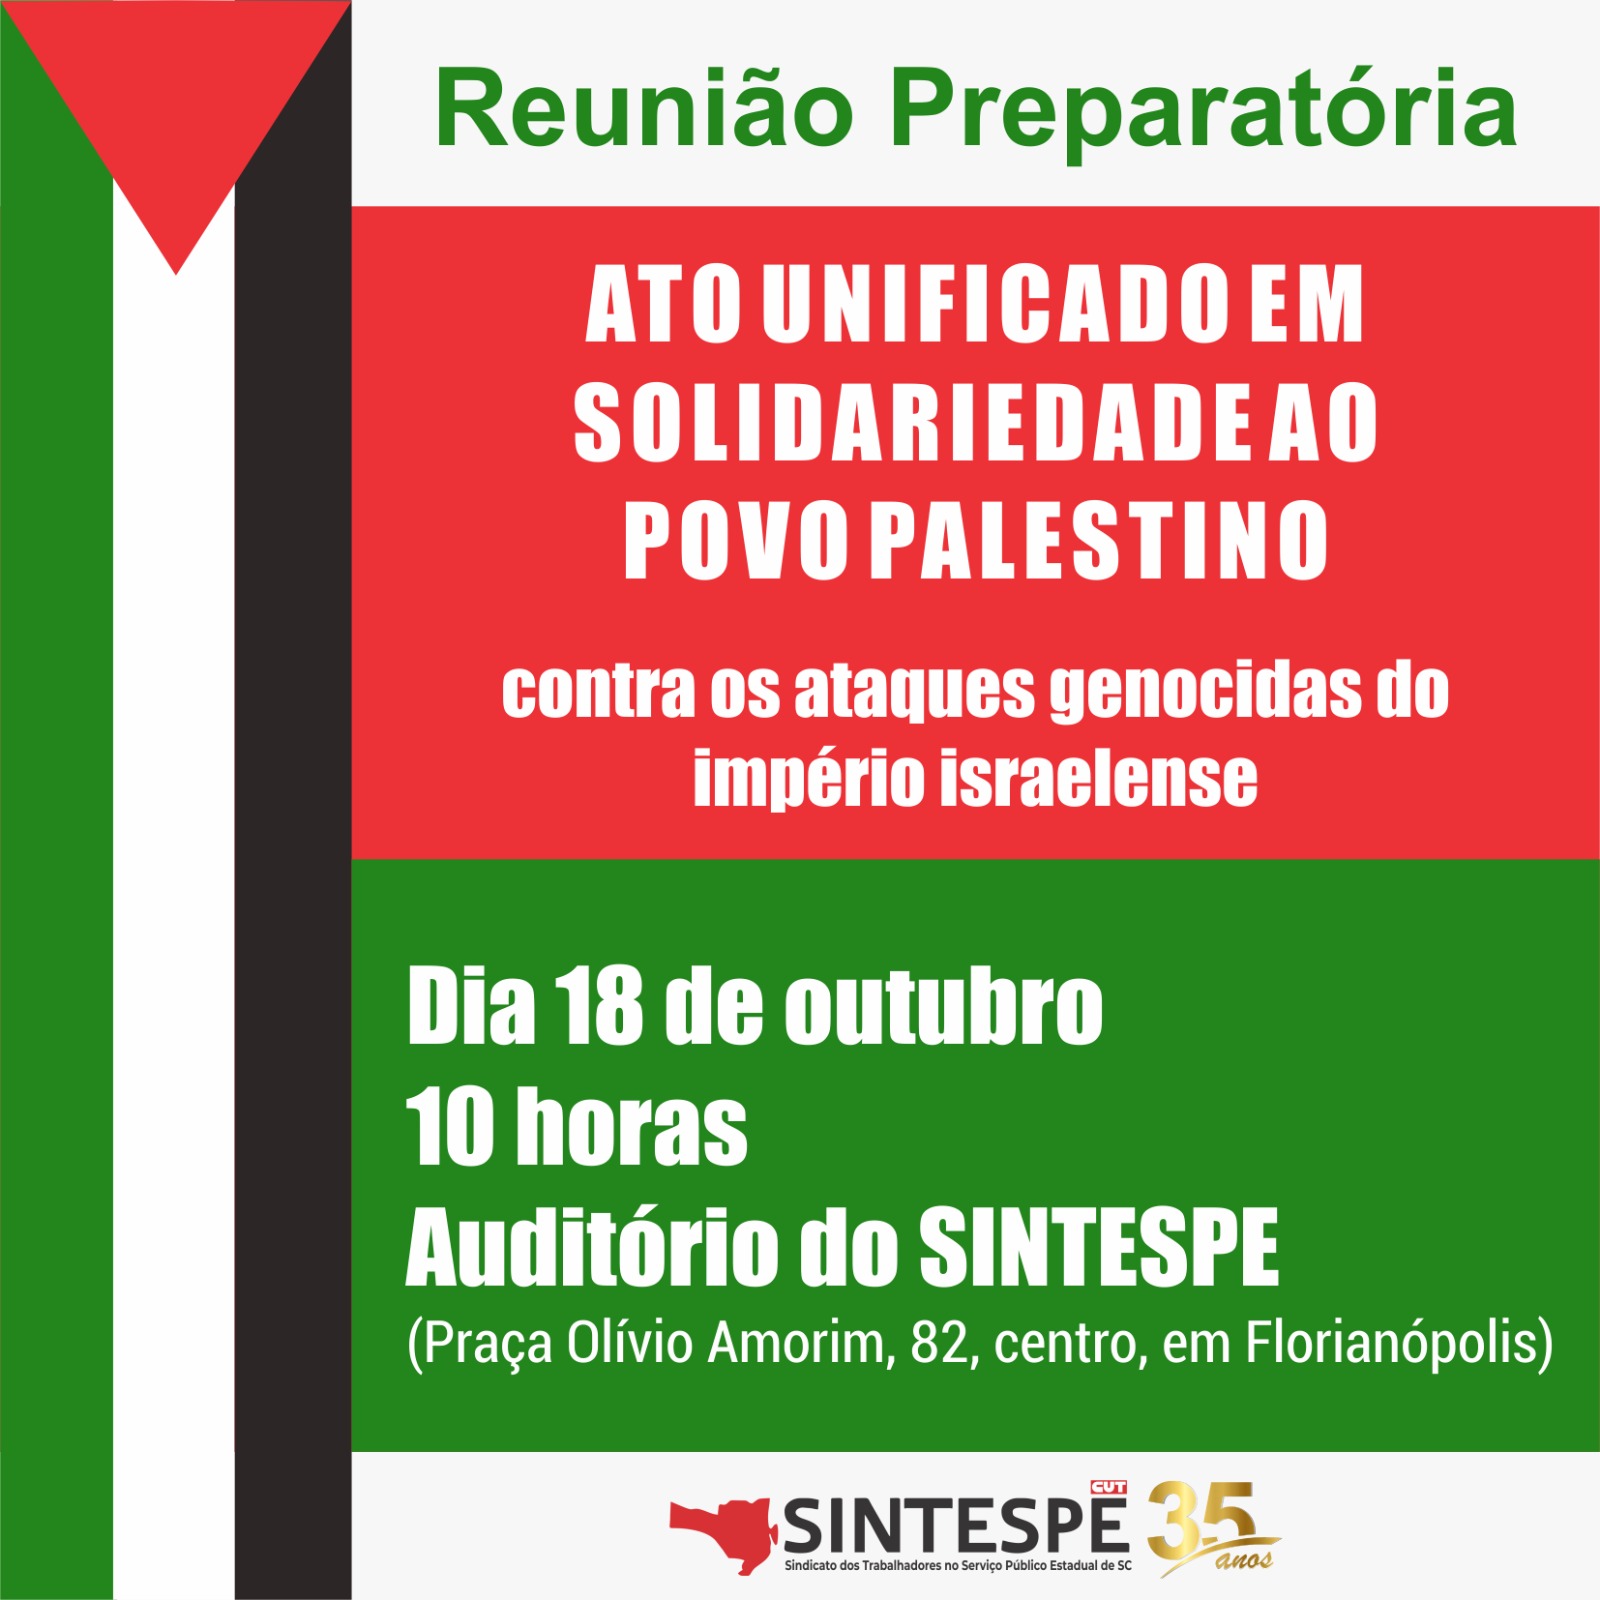 Dia 18 tem reunião preparatória de Ato unificado em solidariedade ao povo palestino